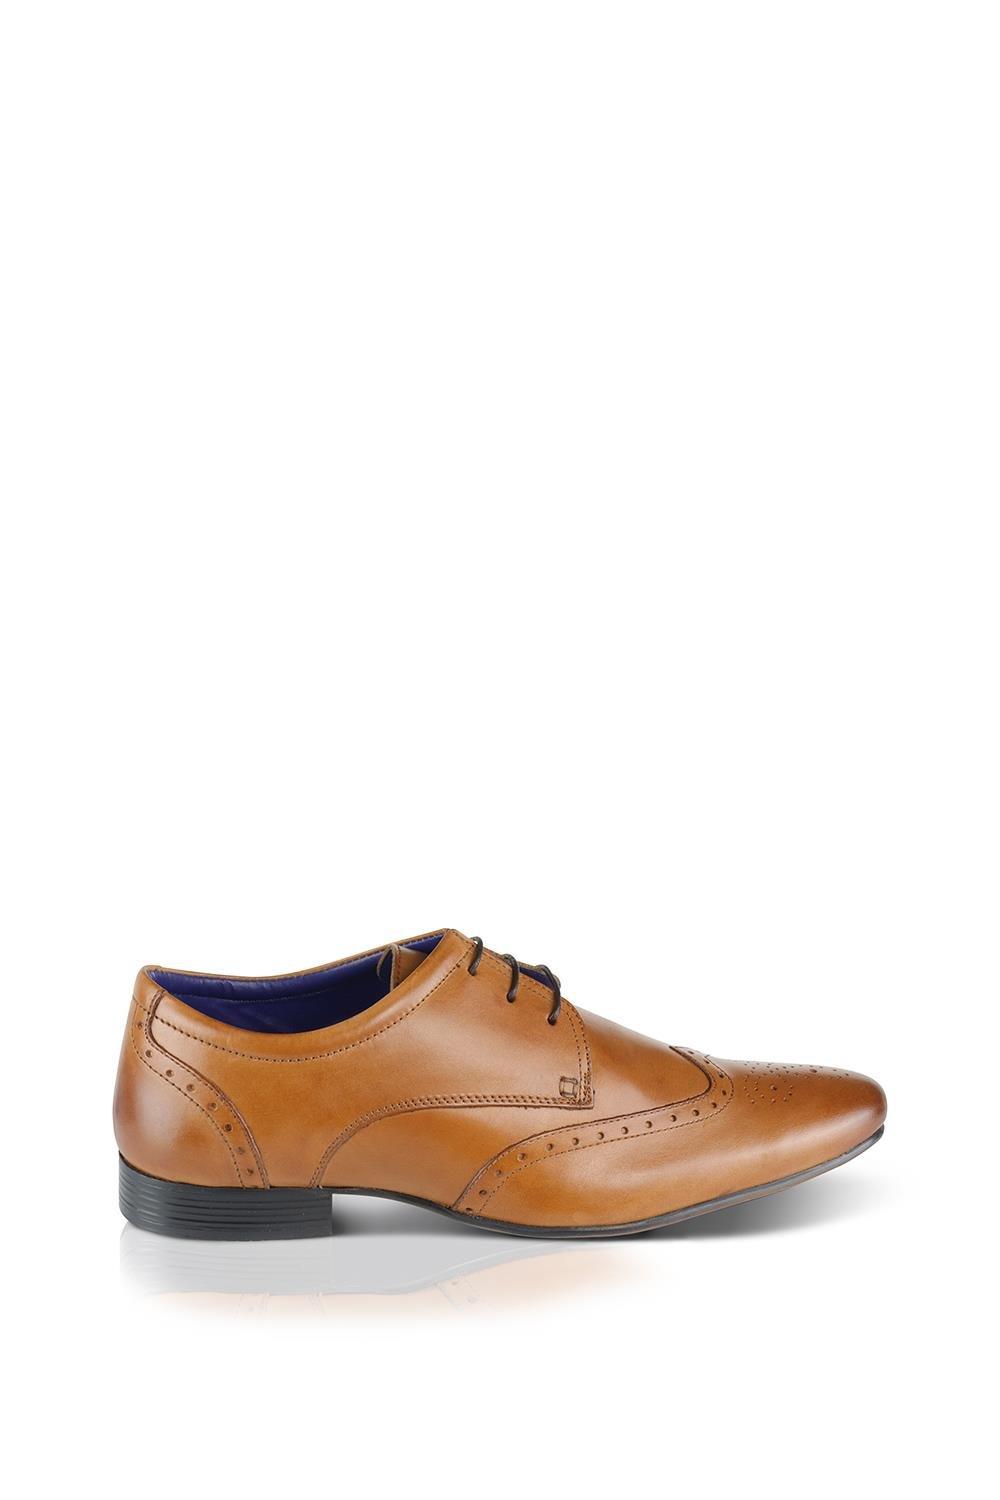 туфли классические l Кожаные туфли-броги Fleet Silver Street London, коричневый